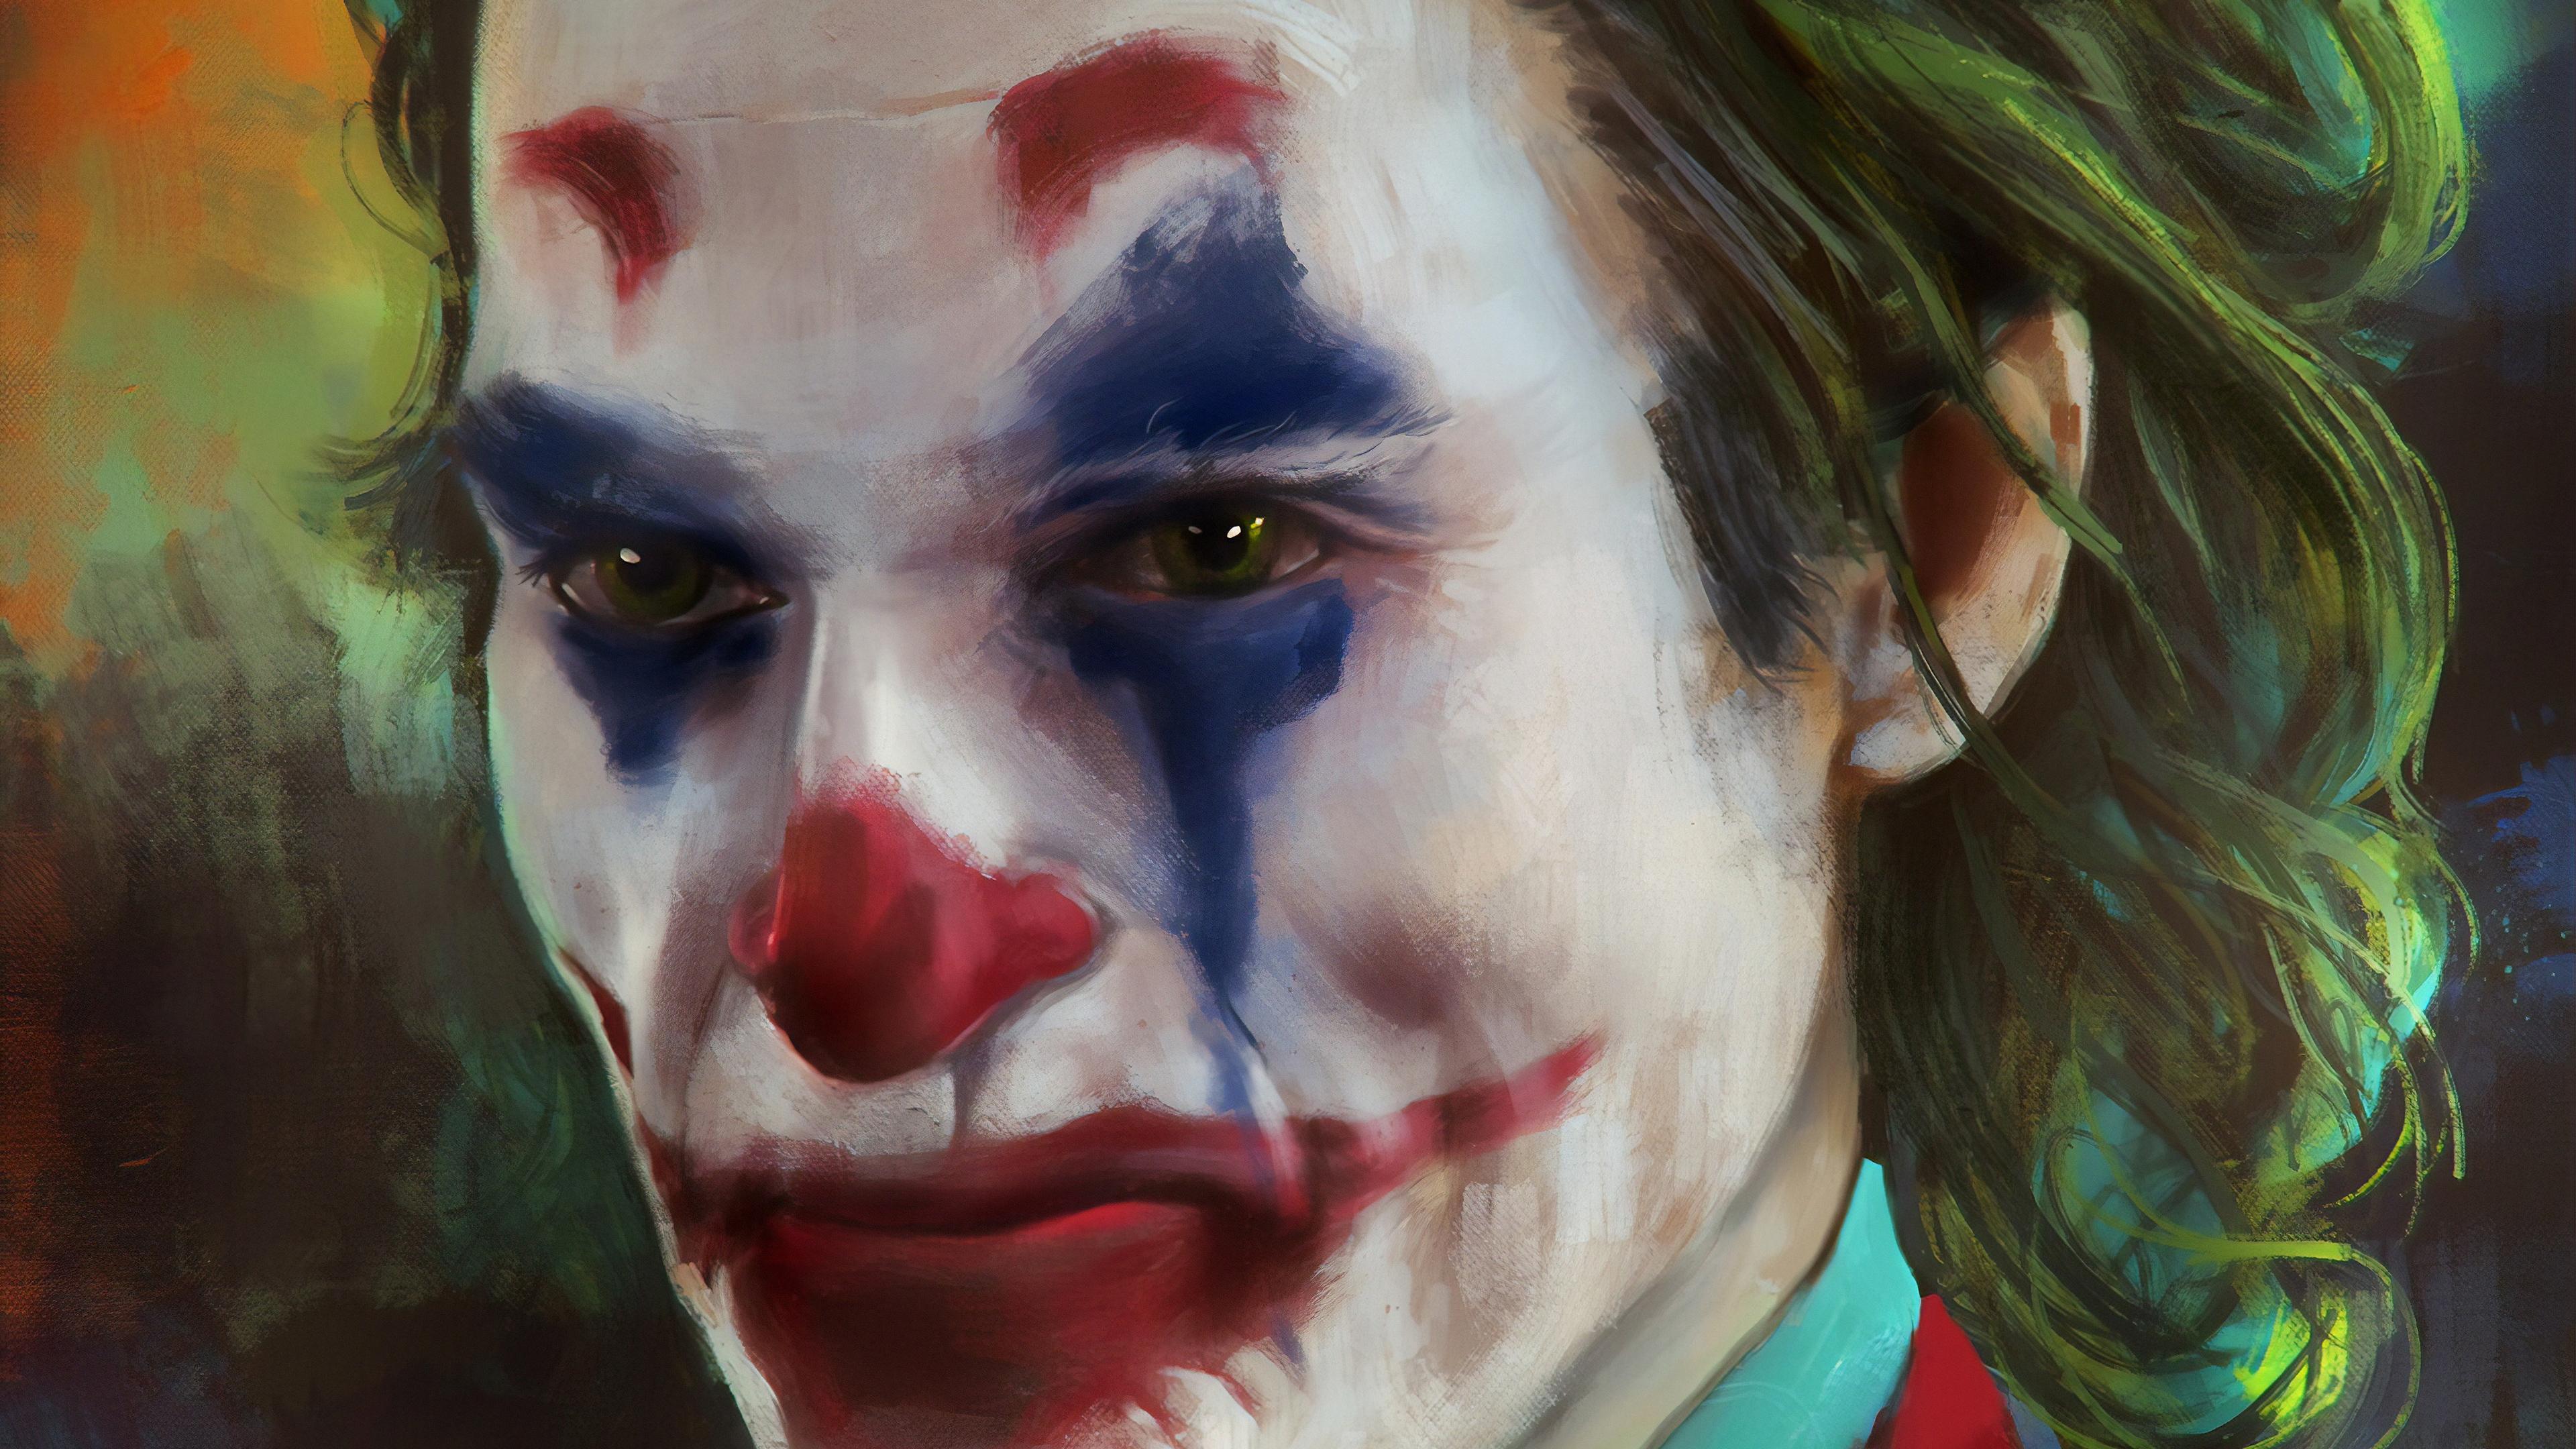 Wallpapers 4k The Joker Joaquin Phoenix 2019 movies